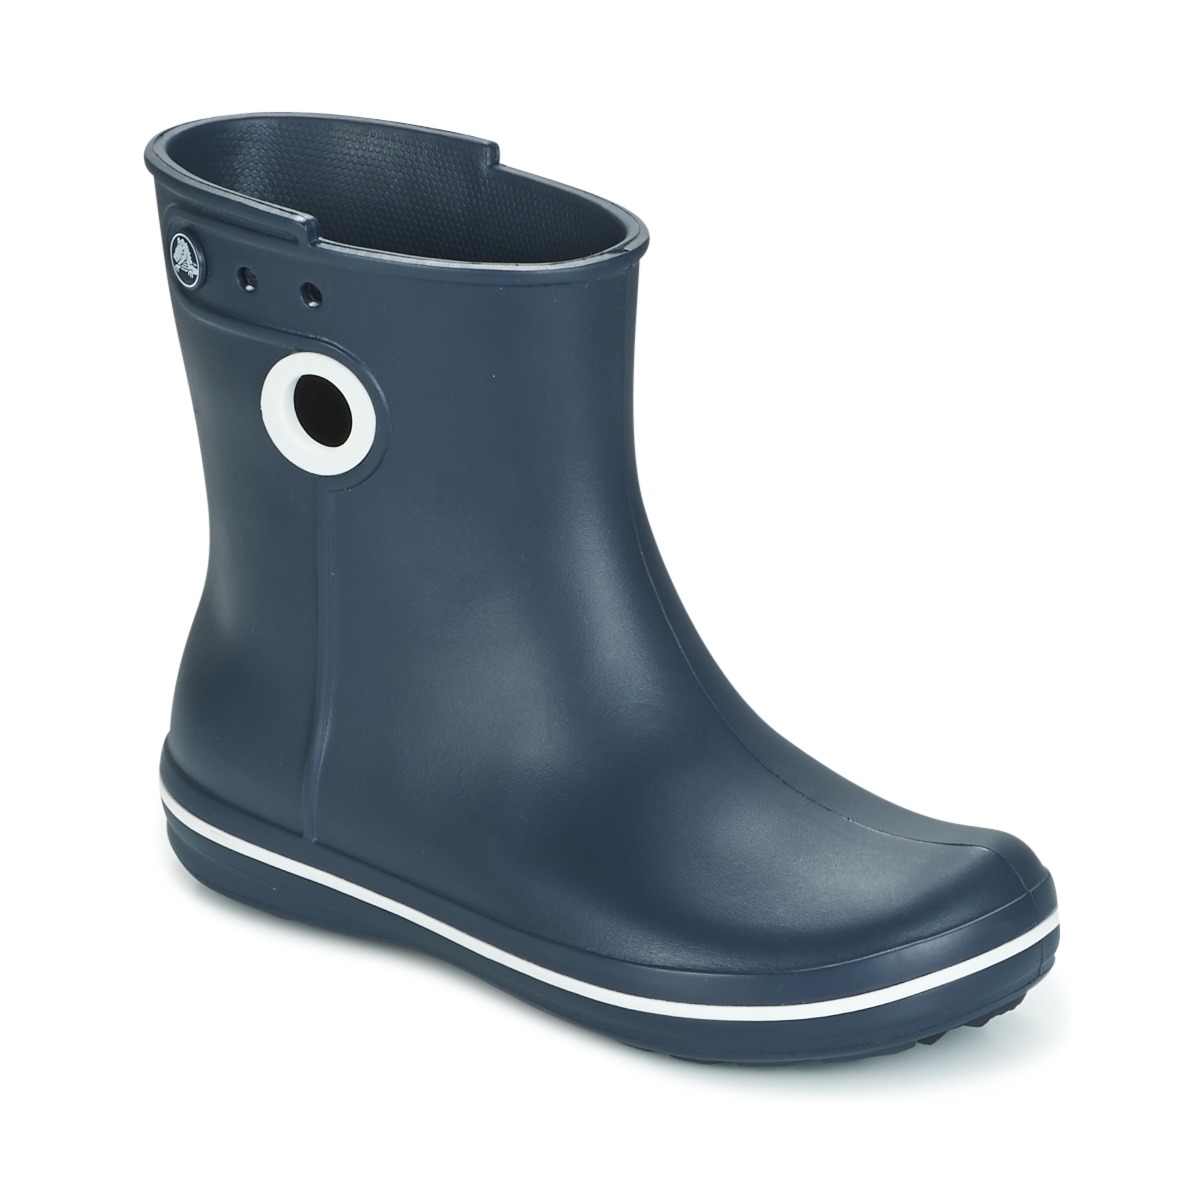 bekræft venligst Kærlig vokal Crocs JAUNT SHORTY BOOTS Marine - Free delivery | Spartoo NET ! - Shoes  Wellington boots Women USD/$35.20